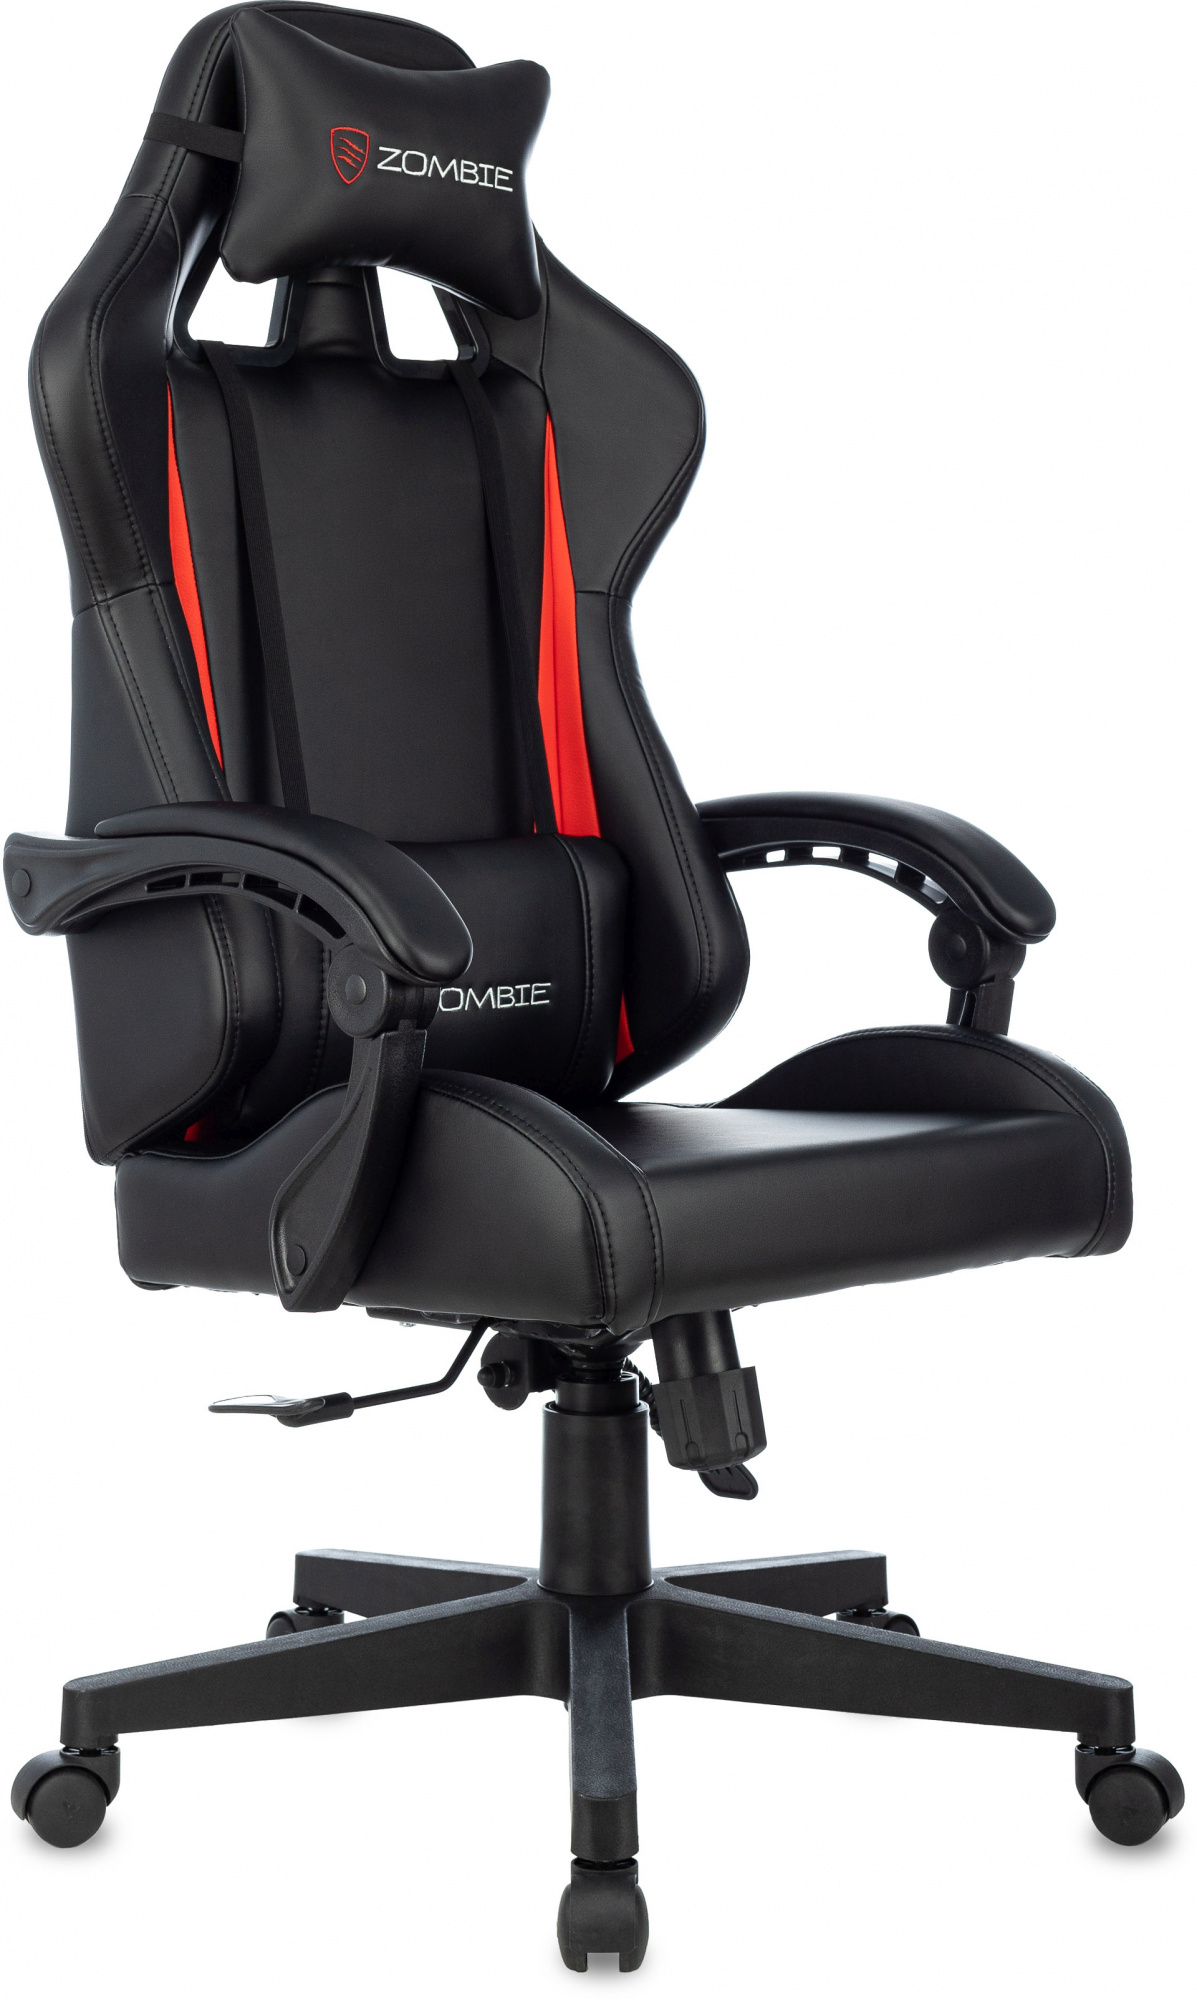 Игровые кресла  E2E4 Кресло игровое Бюрократ ZOMBIE GAME TETRA, черный/красный (ZOMBIE GAME TETRA BR)